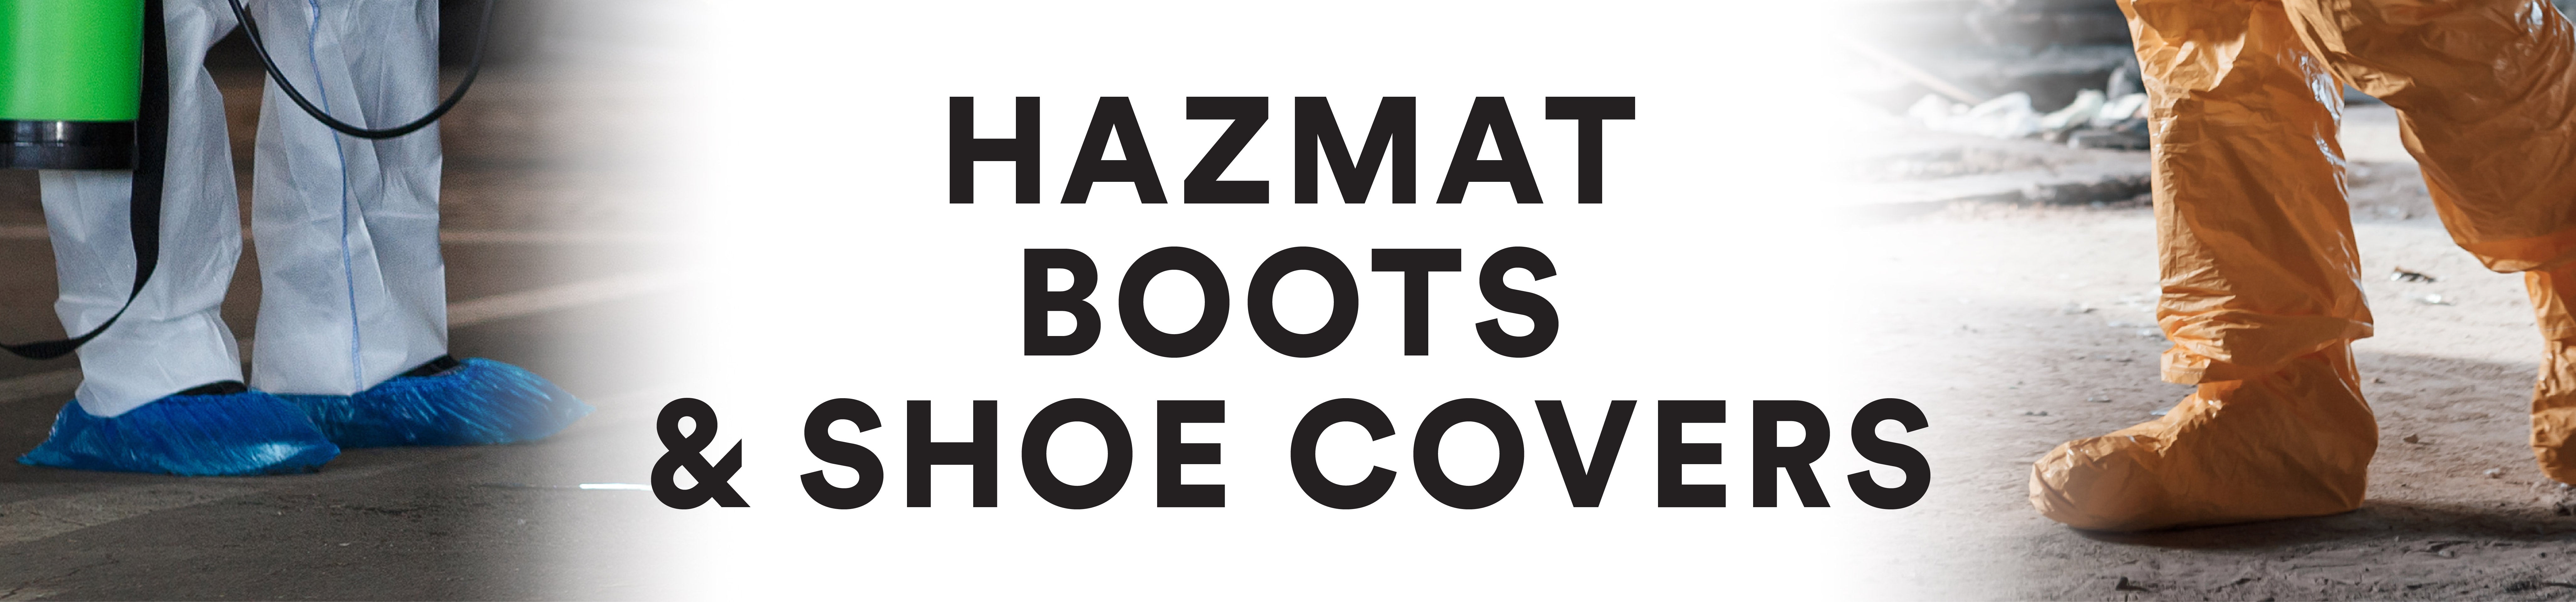 HazMat Boots & Shoe Covers